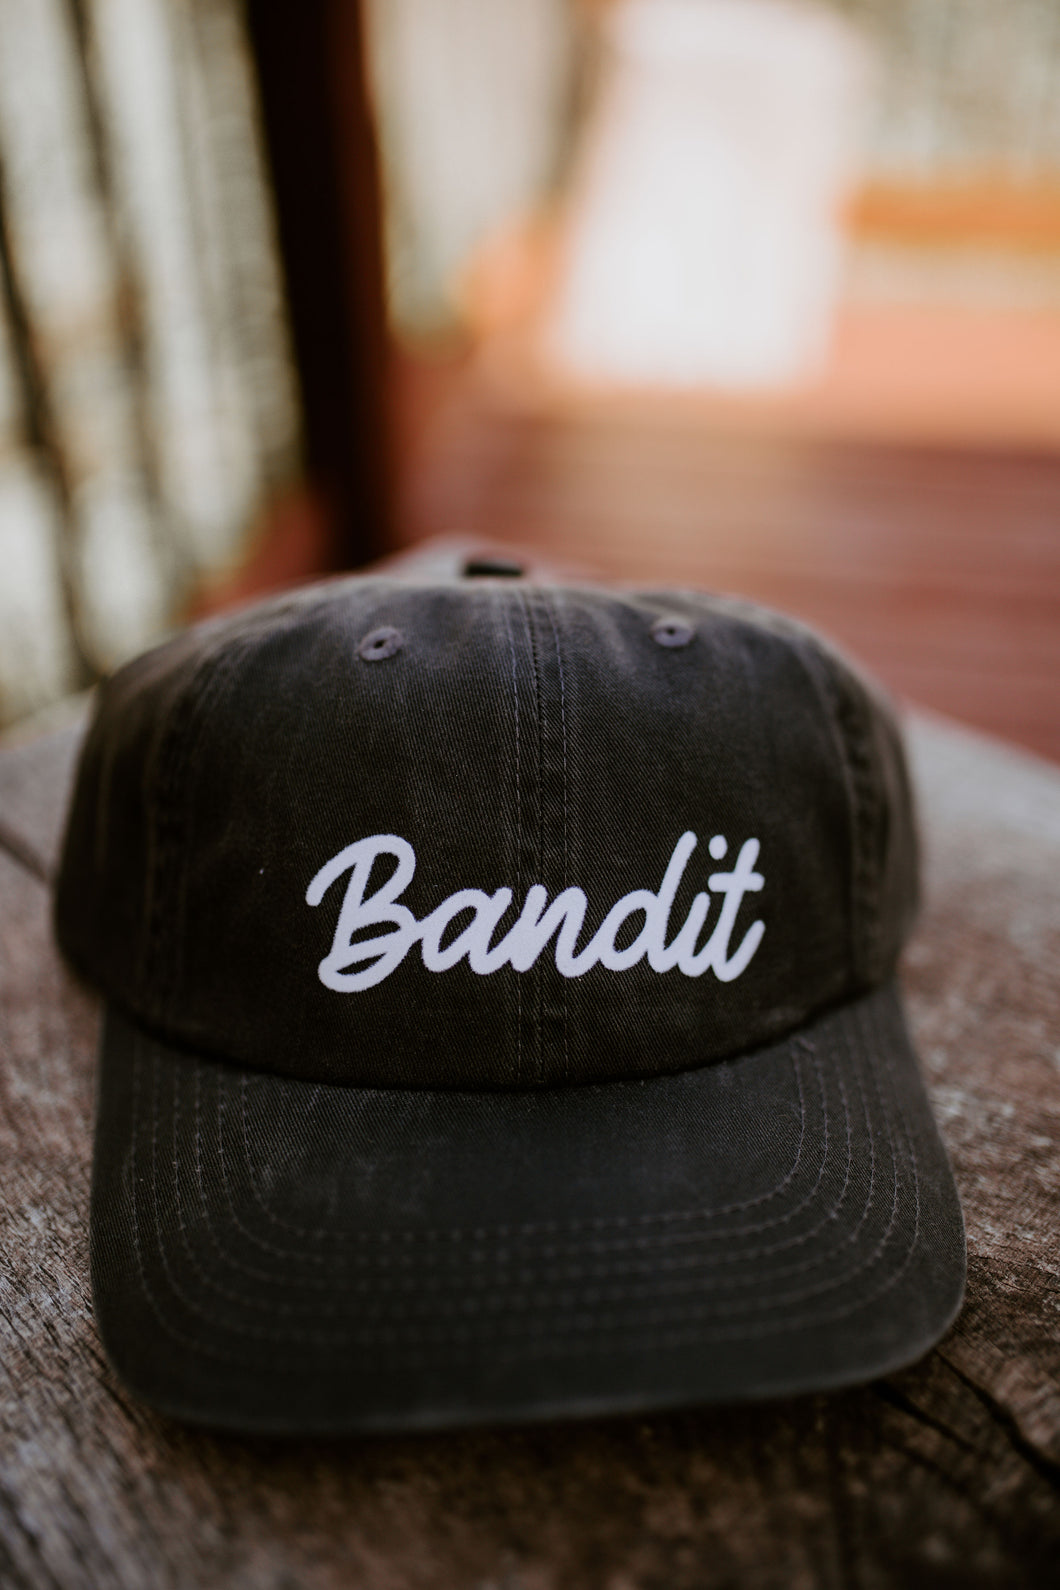 Bandit - ball cap - 4 colors